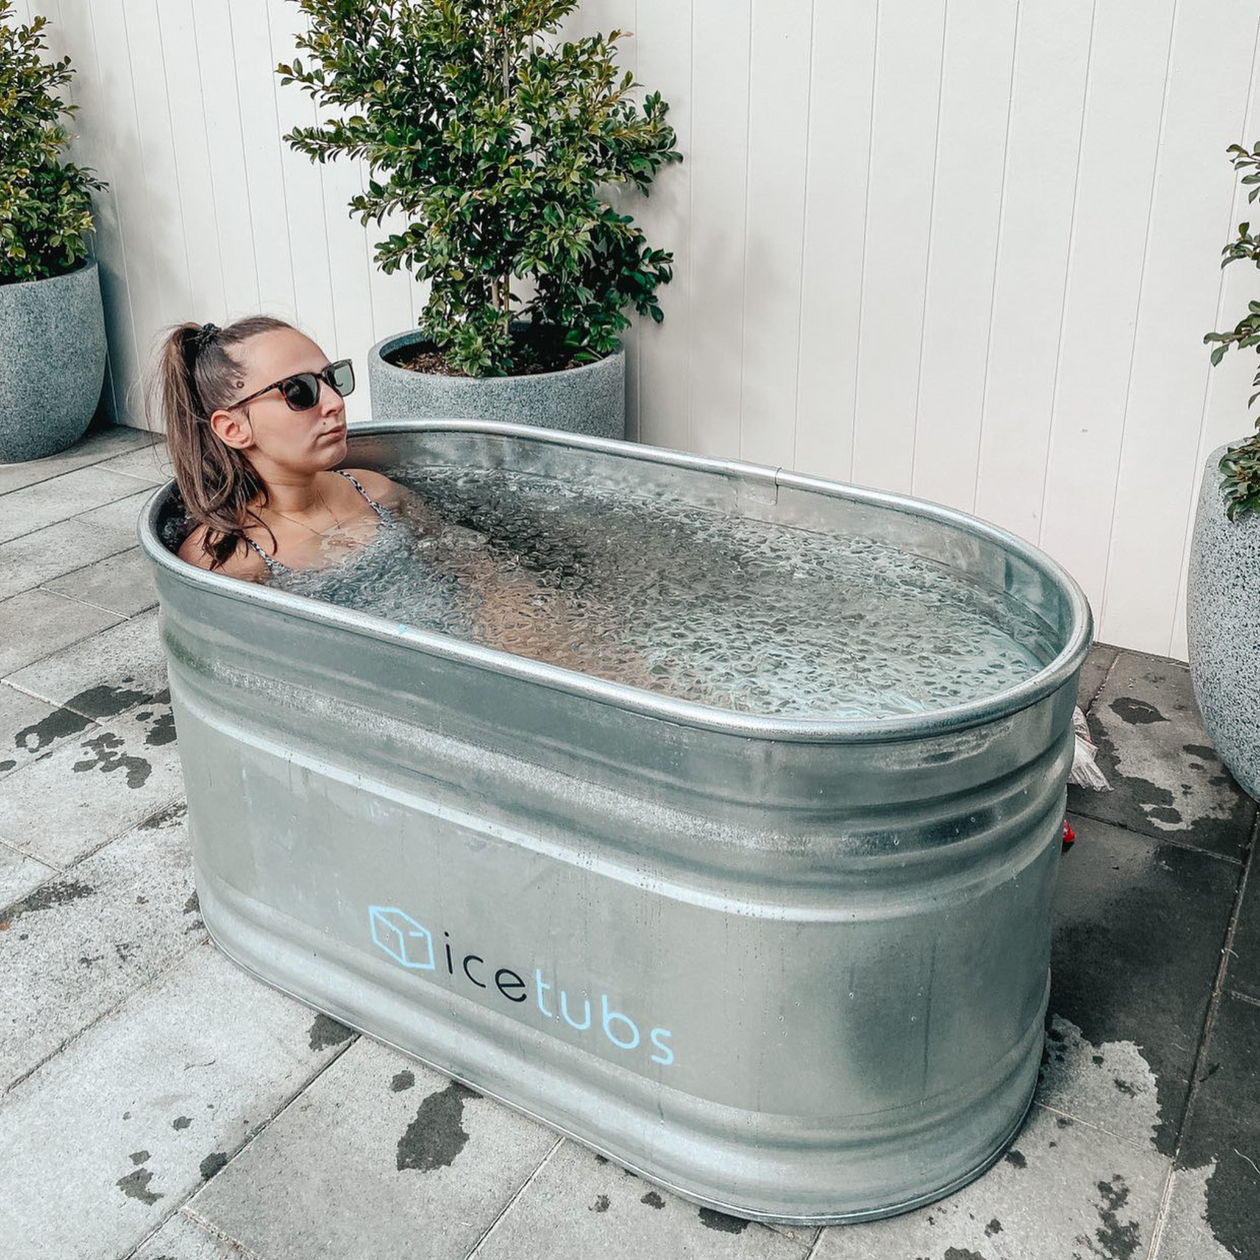 ice tub – IceTubs Australia